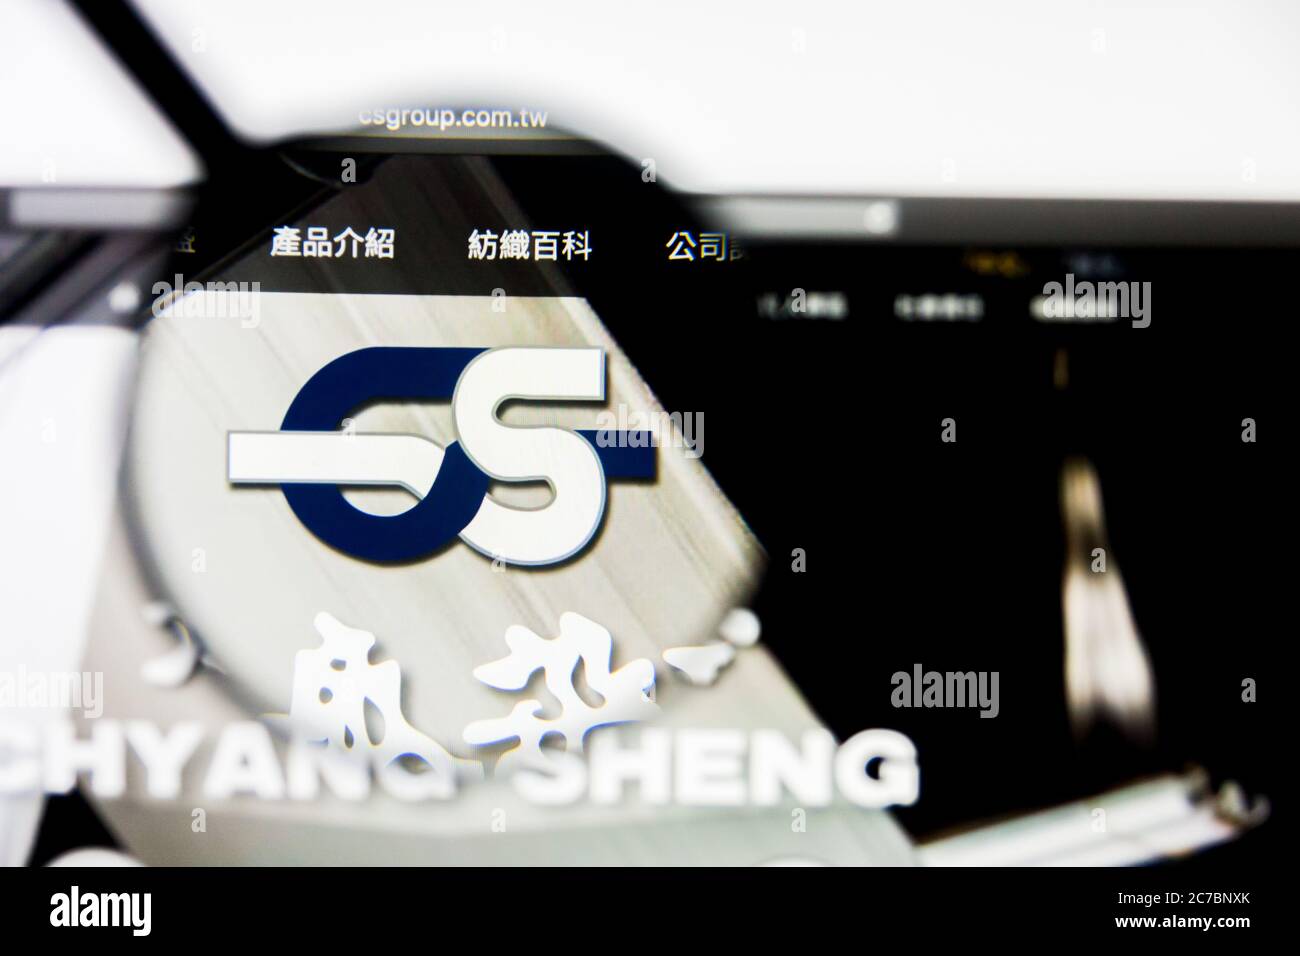 San Francisco, California, USA - 8 aprile 2019: Editoriale illustrativo della pagina iniziale del sito Web di Chyang Sheng per la tintura e la finitura. Tintura di Chyang Sheng e. Foto Stock